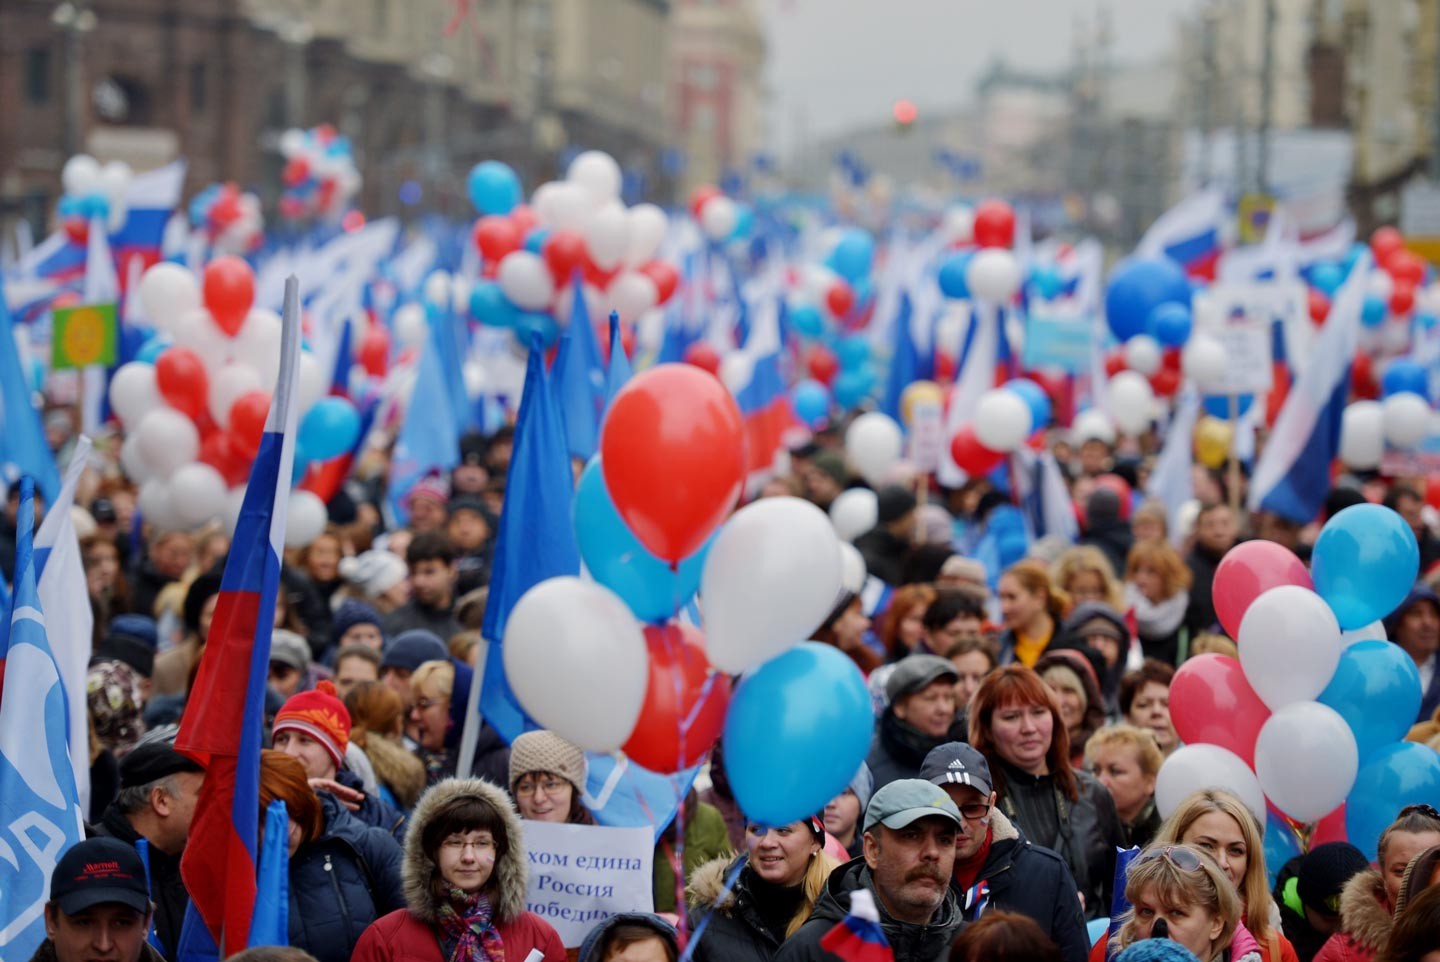 фото день народного единства в россии